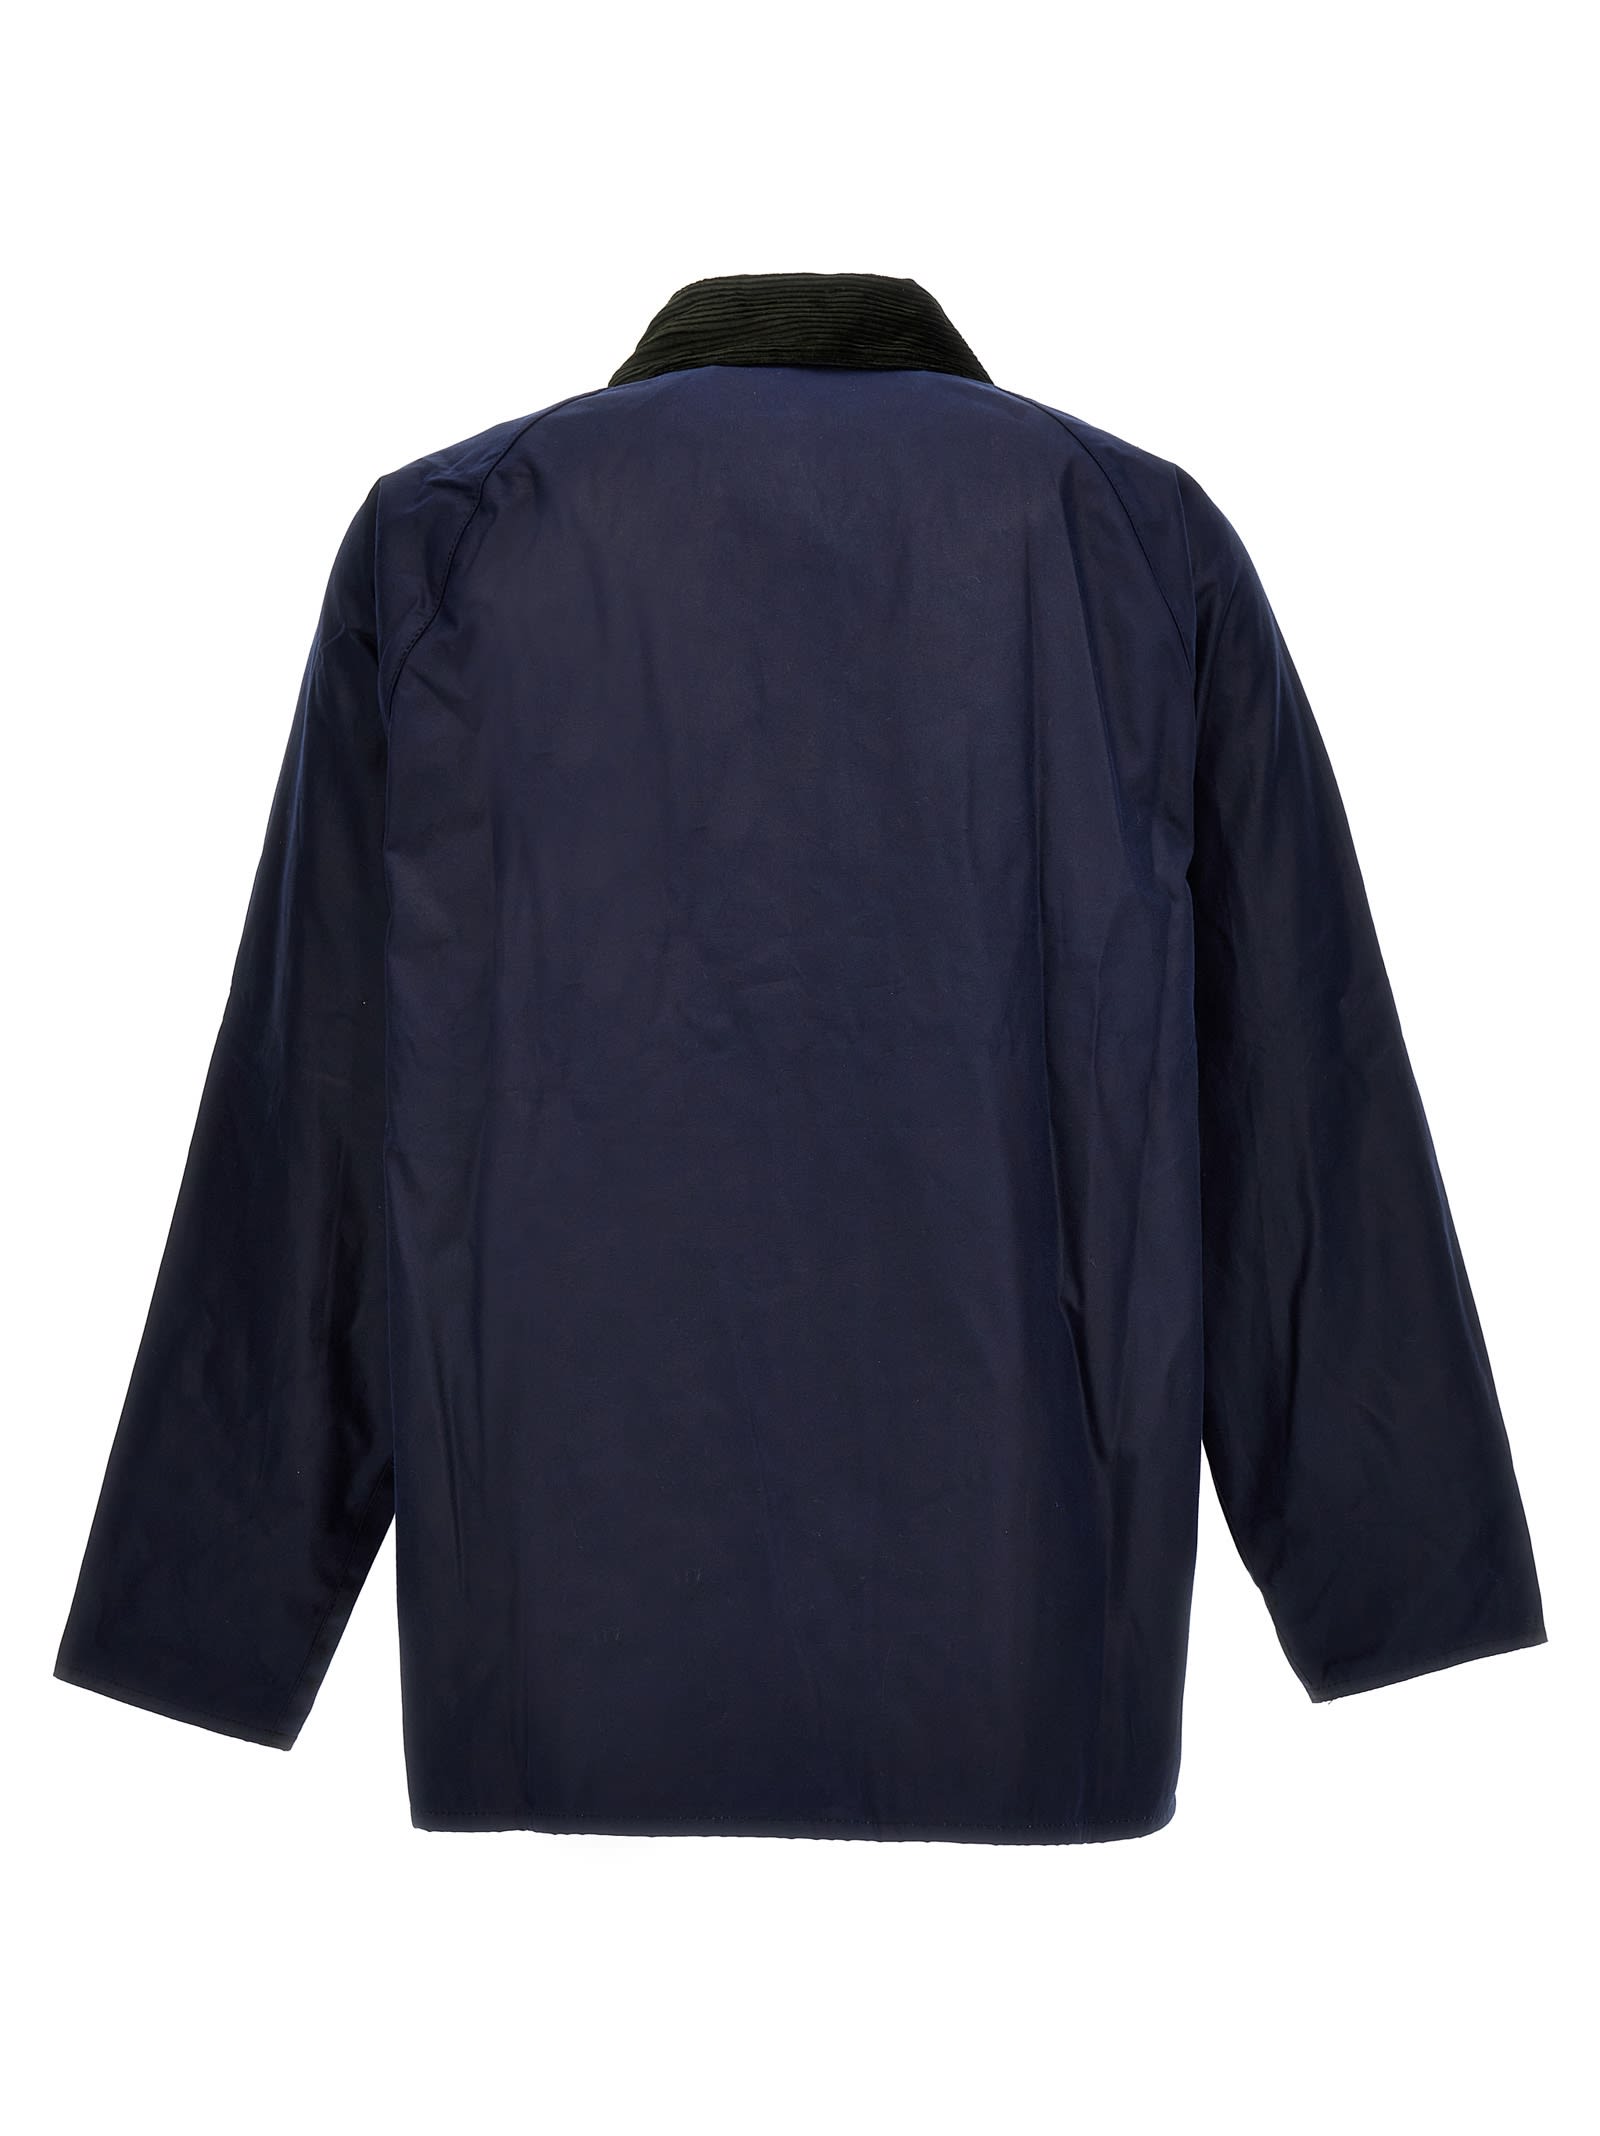 Barbour Maison Kitsuné Beaufort Jacket Wax Indigo in Blue for Men